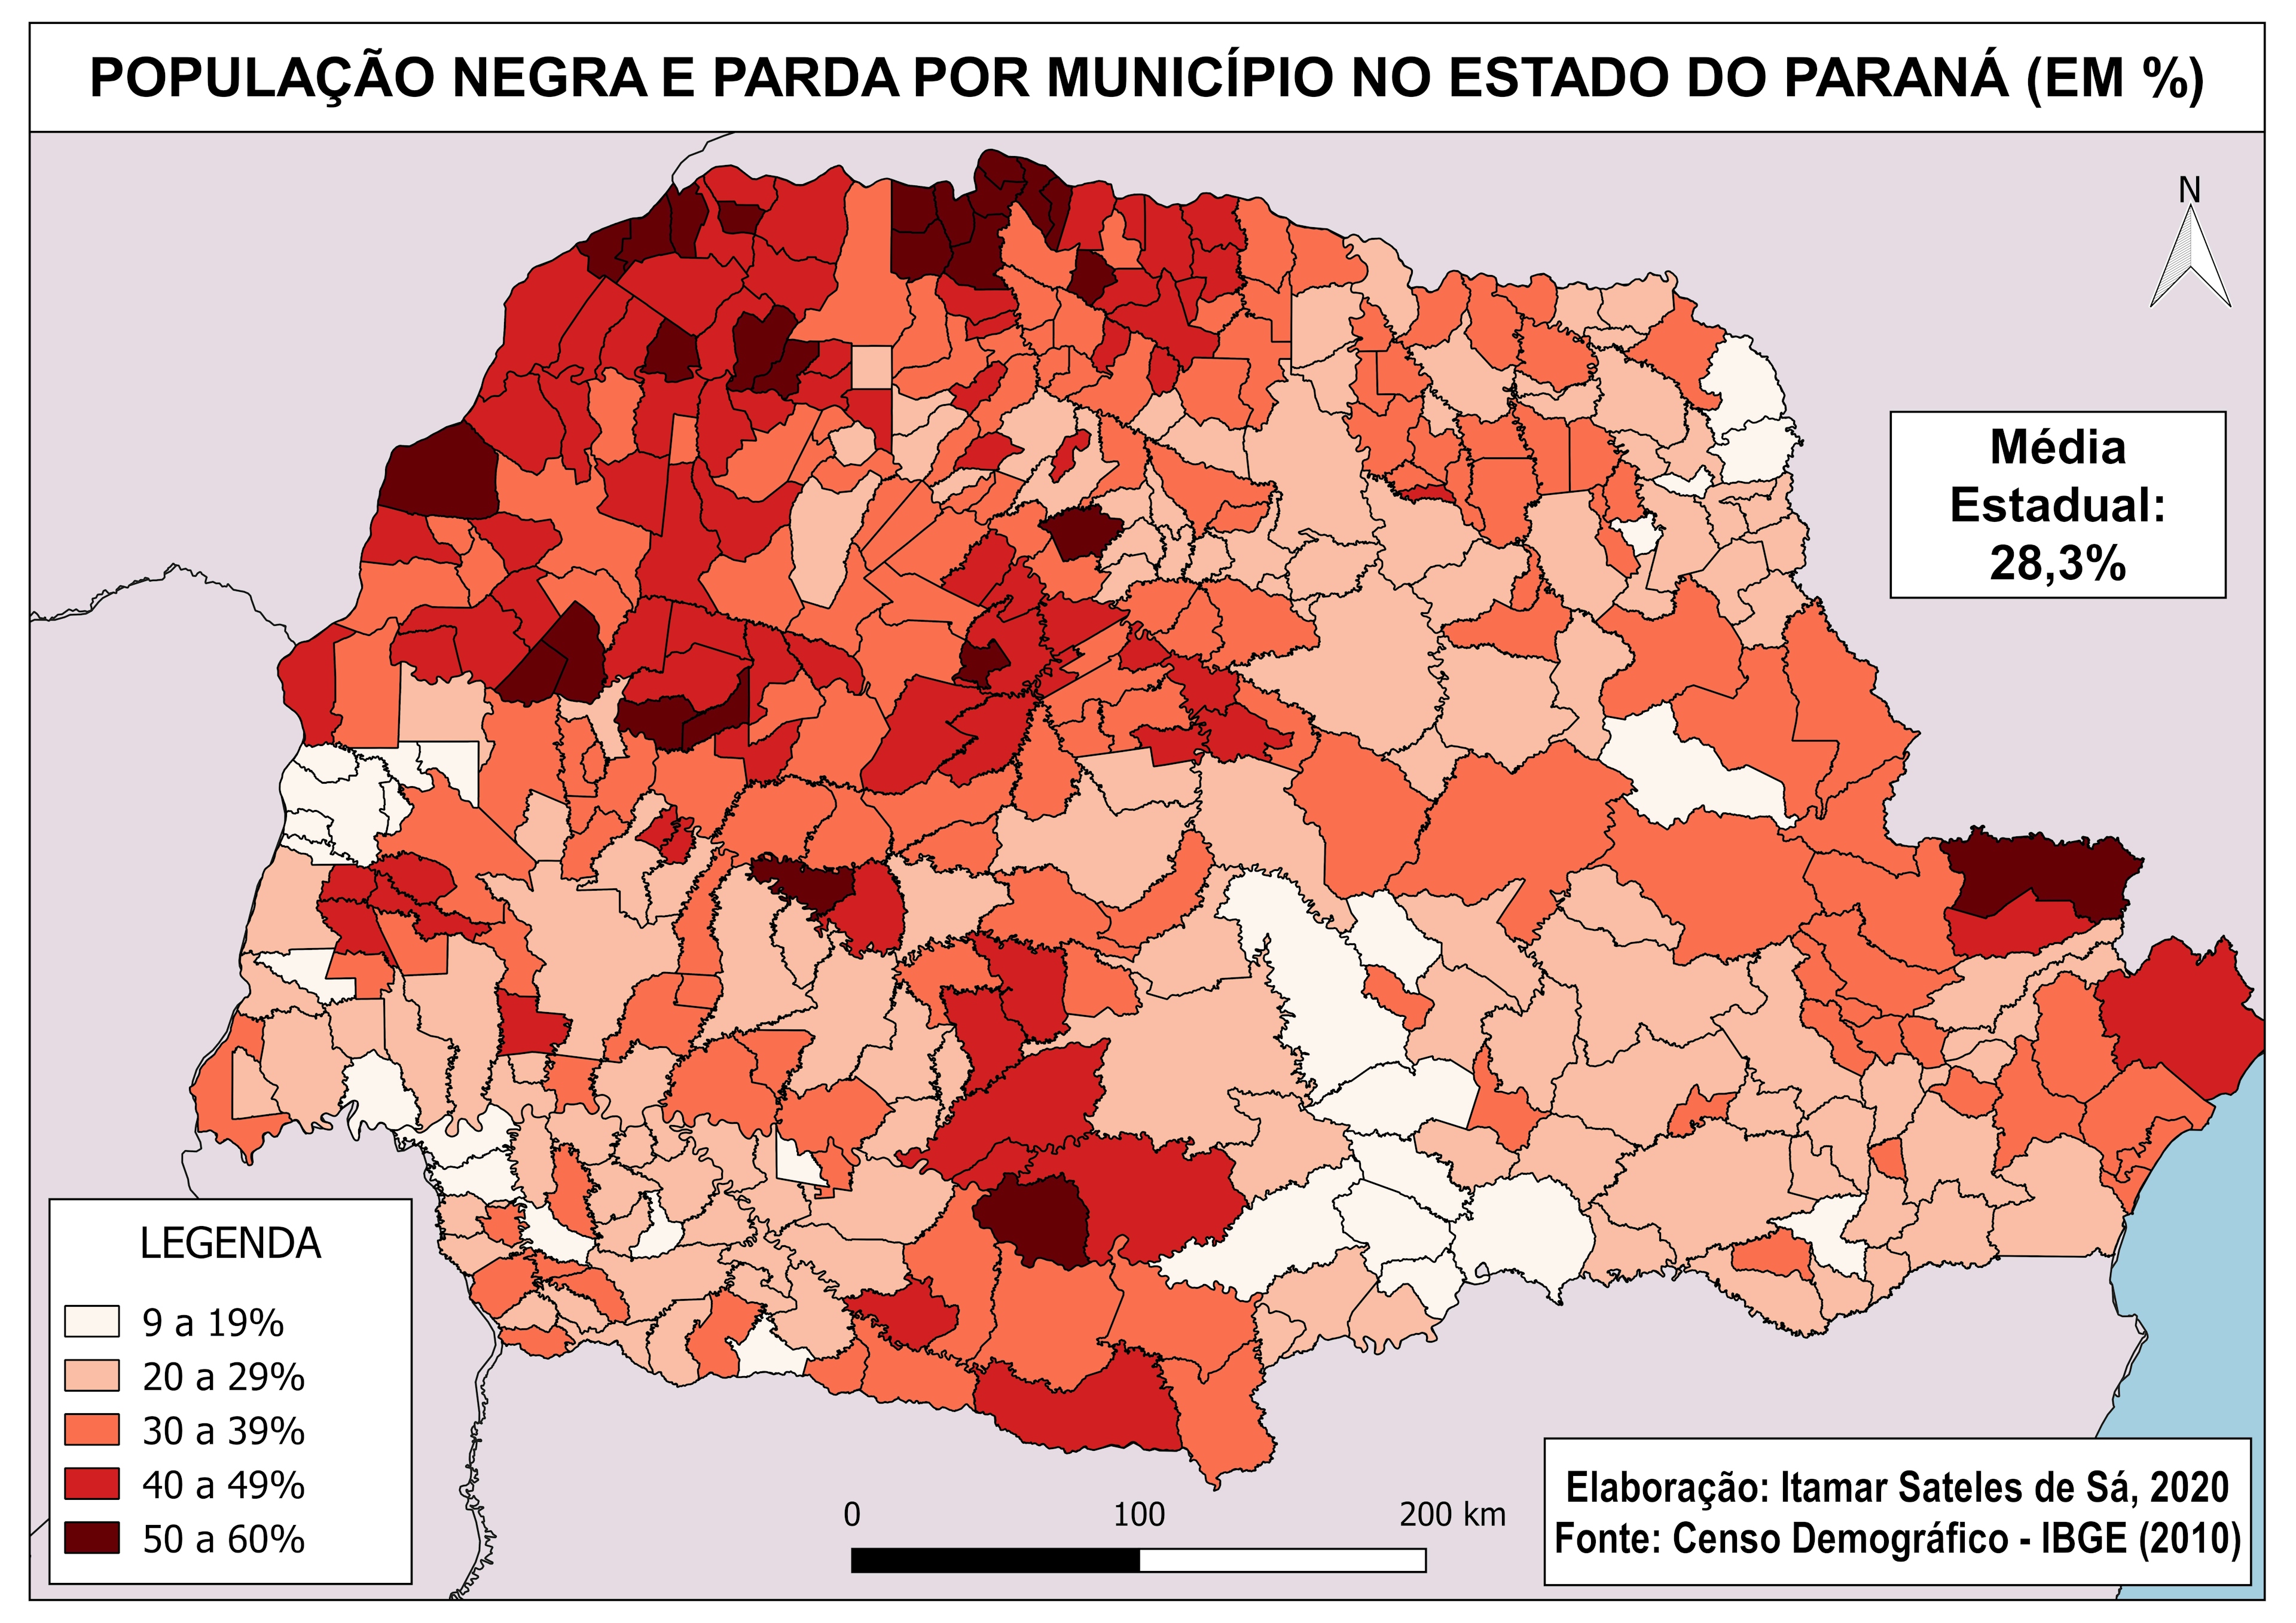 POPULAÇÃO NEGRA E PARDA NO PARANÁ (2010)